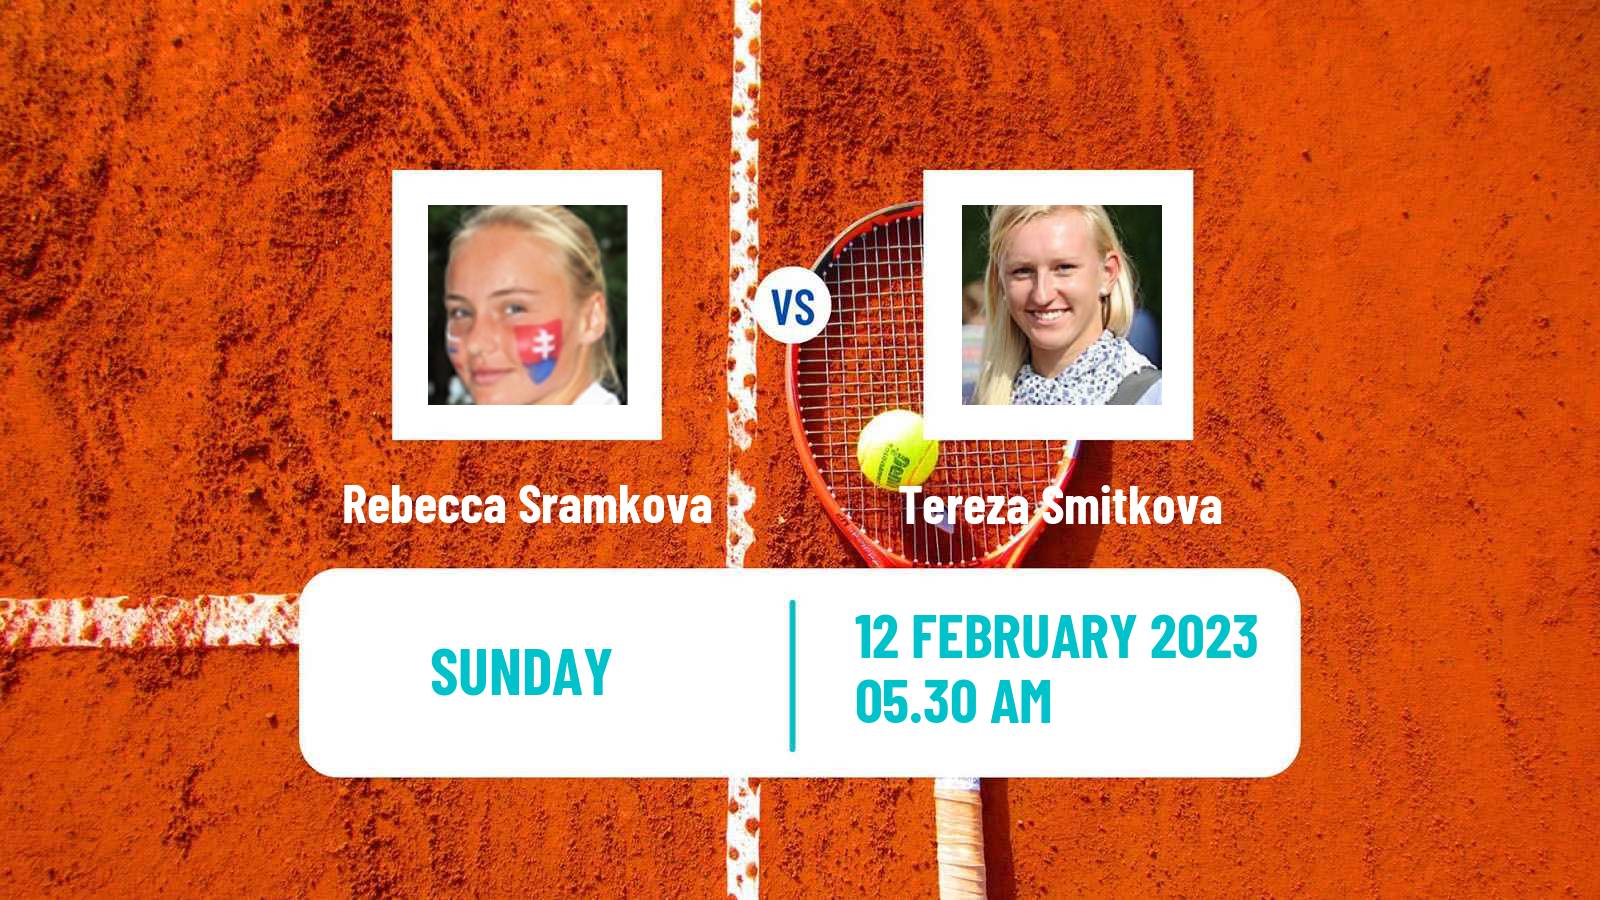 Tennis ITF Tournaments Rebecca Sramkova - Tereza Smitkova